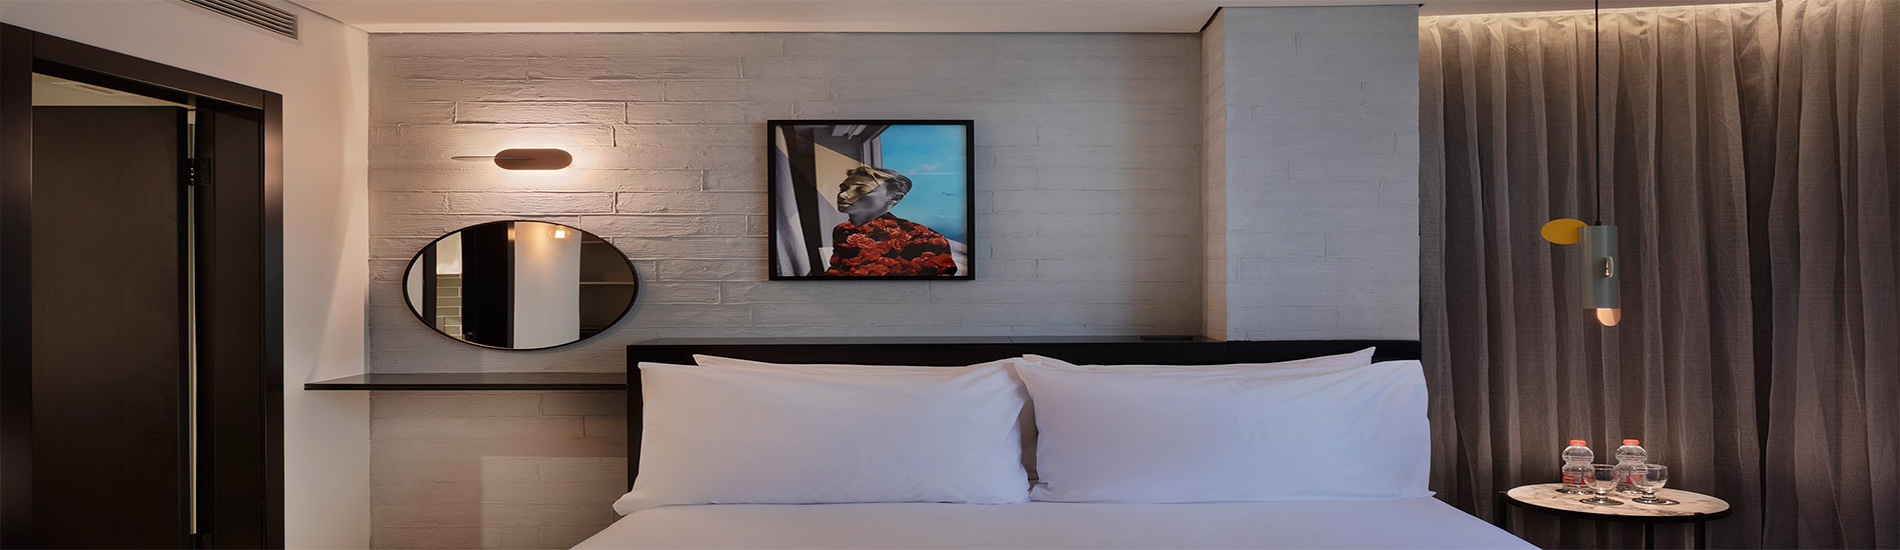 מבטח על החדר במלון בוטיק מיוז תל אביב הכולל מיטת קווין סייז, מראה עגולה, פינת ישיבה יצירה על הקיר ווילון